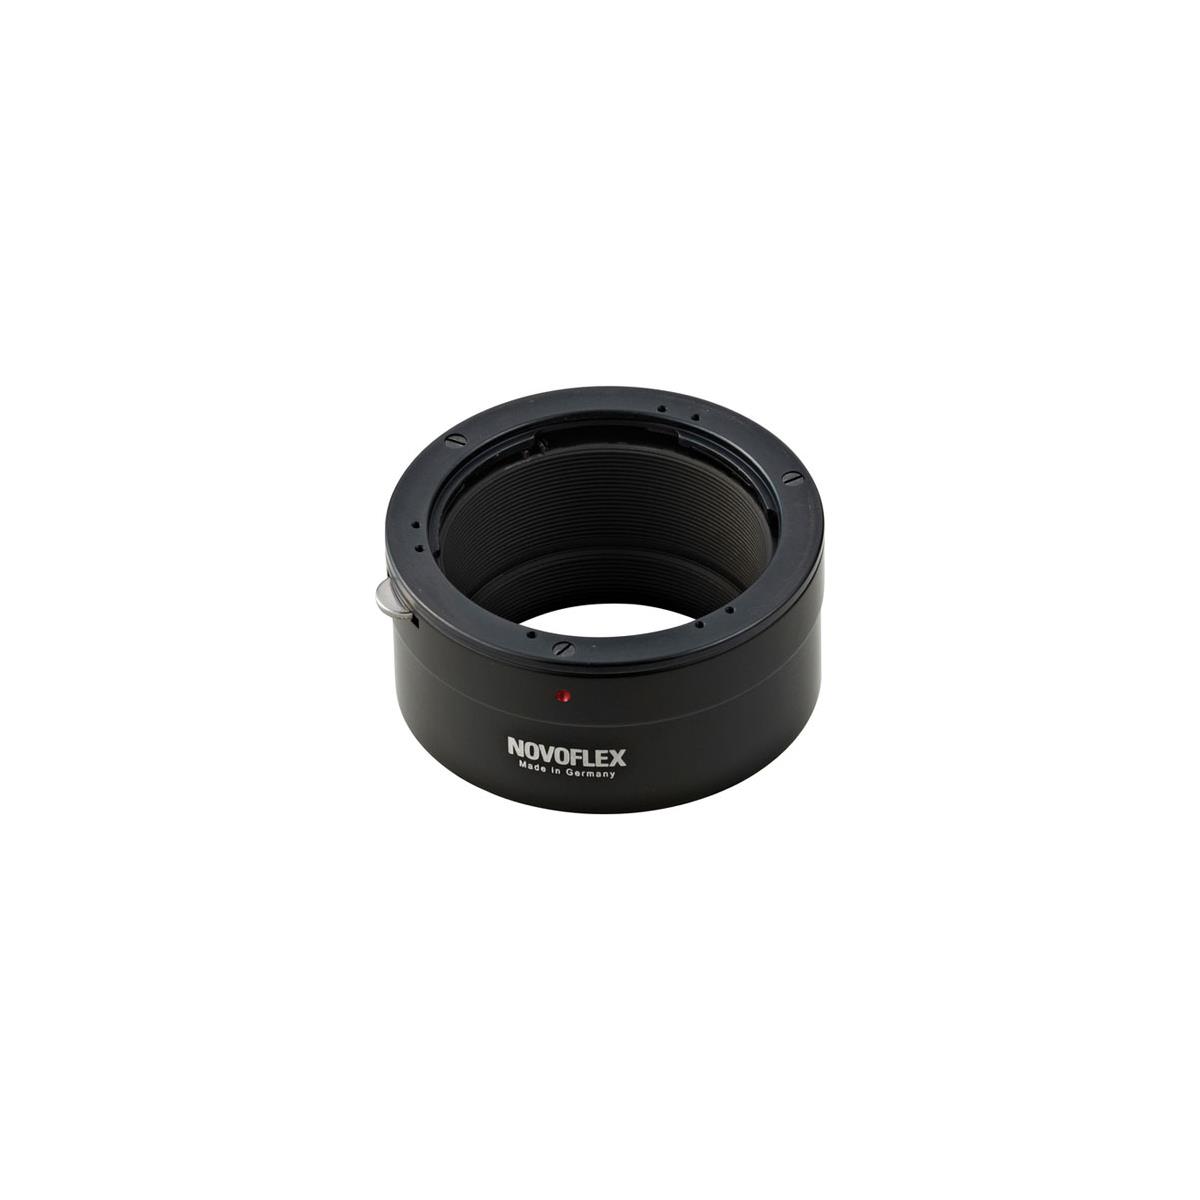 

Novoflex Adaptr Contax/Yashica Lens to Sony NEX Camera